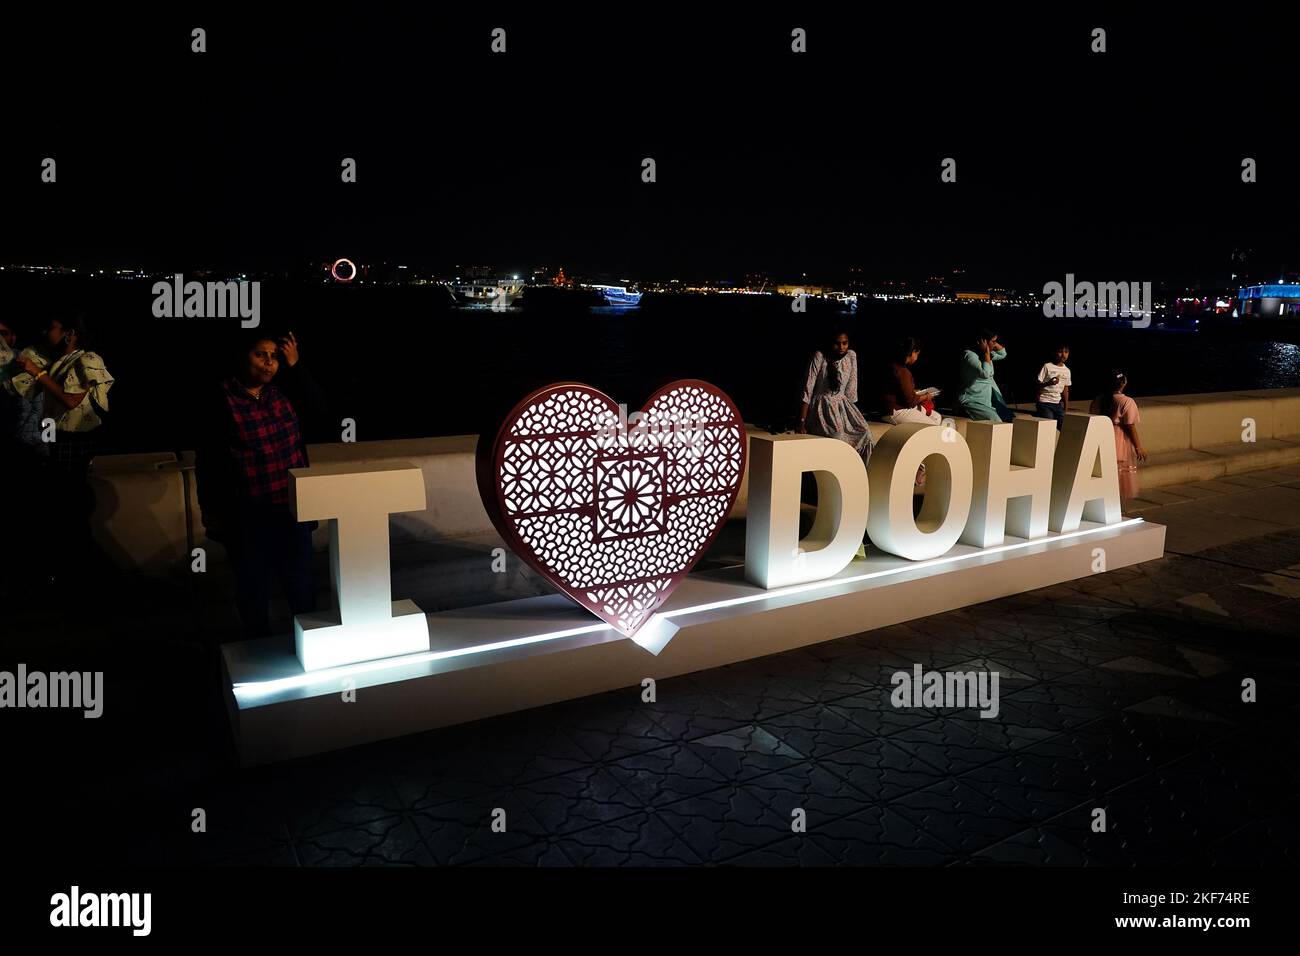 Mi piace il lavoro artistico di Doha in vista della Coppa del mondo FIFA 2022 in Qatar. Data immagine: Mercoledì 16 novembre 2022. Foto Stock